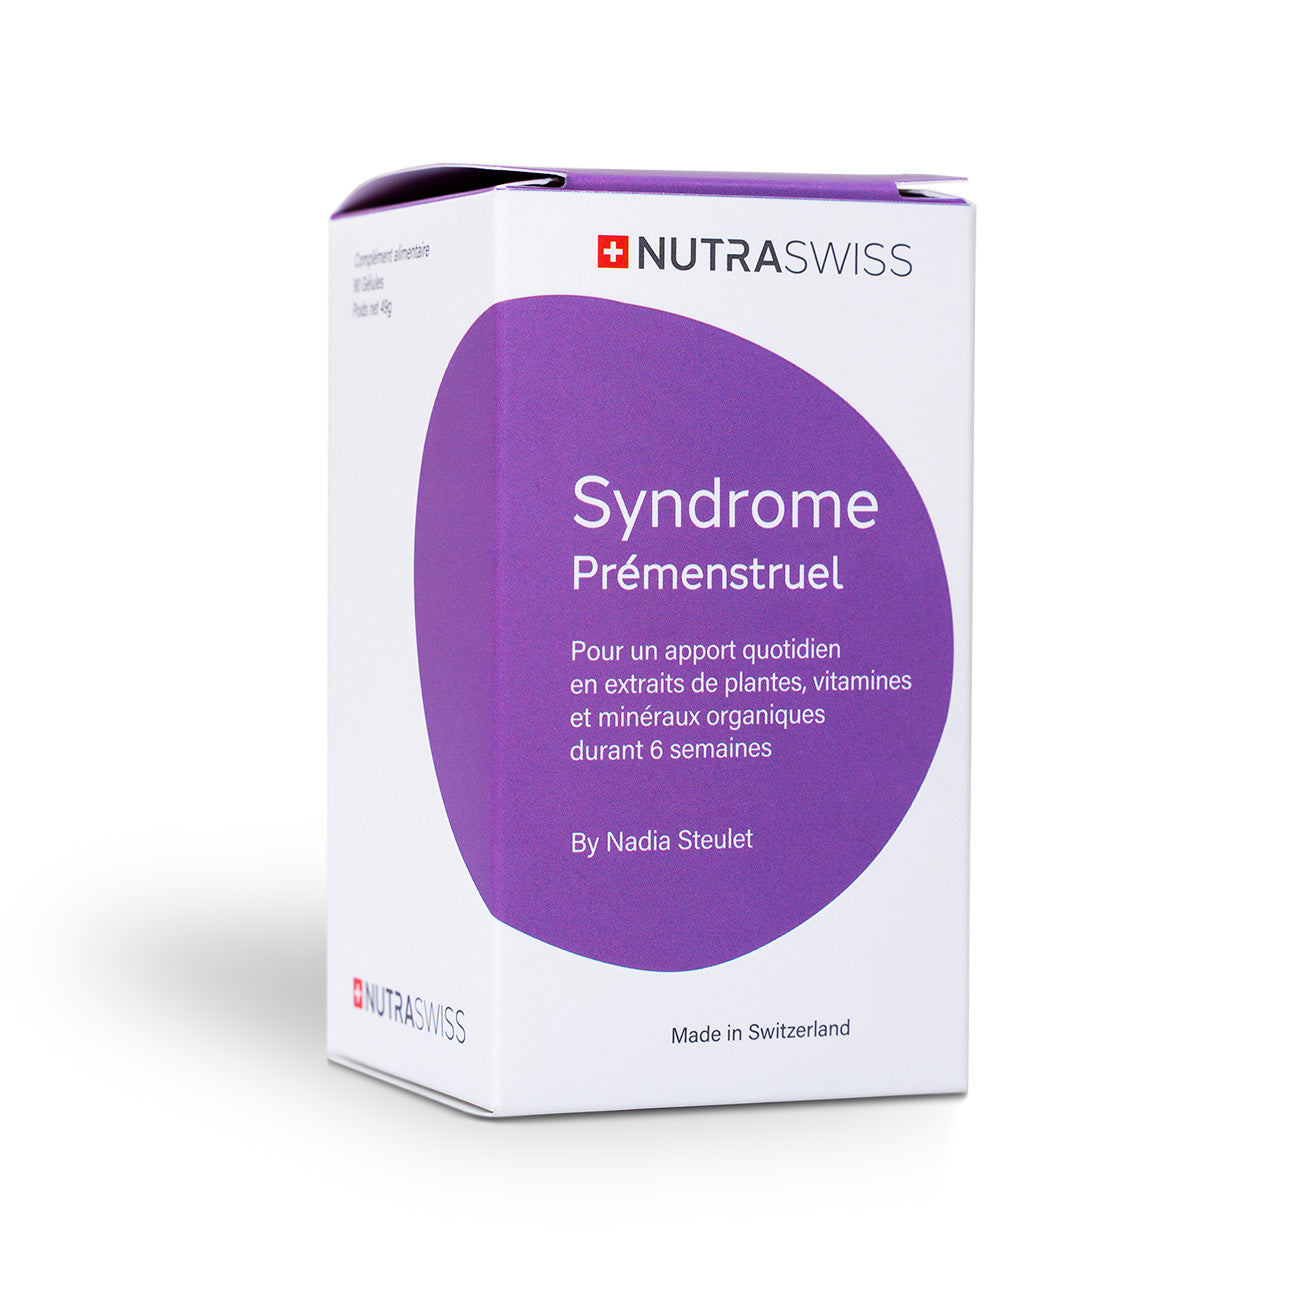 NutraSwiss Syndrome Prémenstruel Règles Menstruations